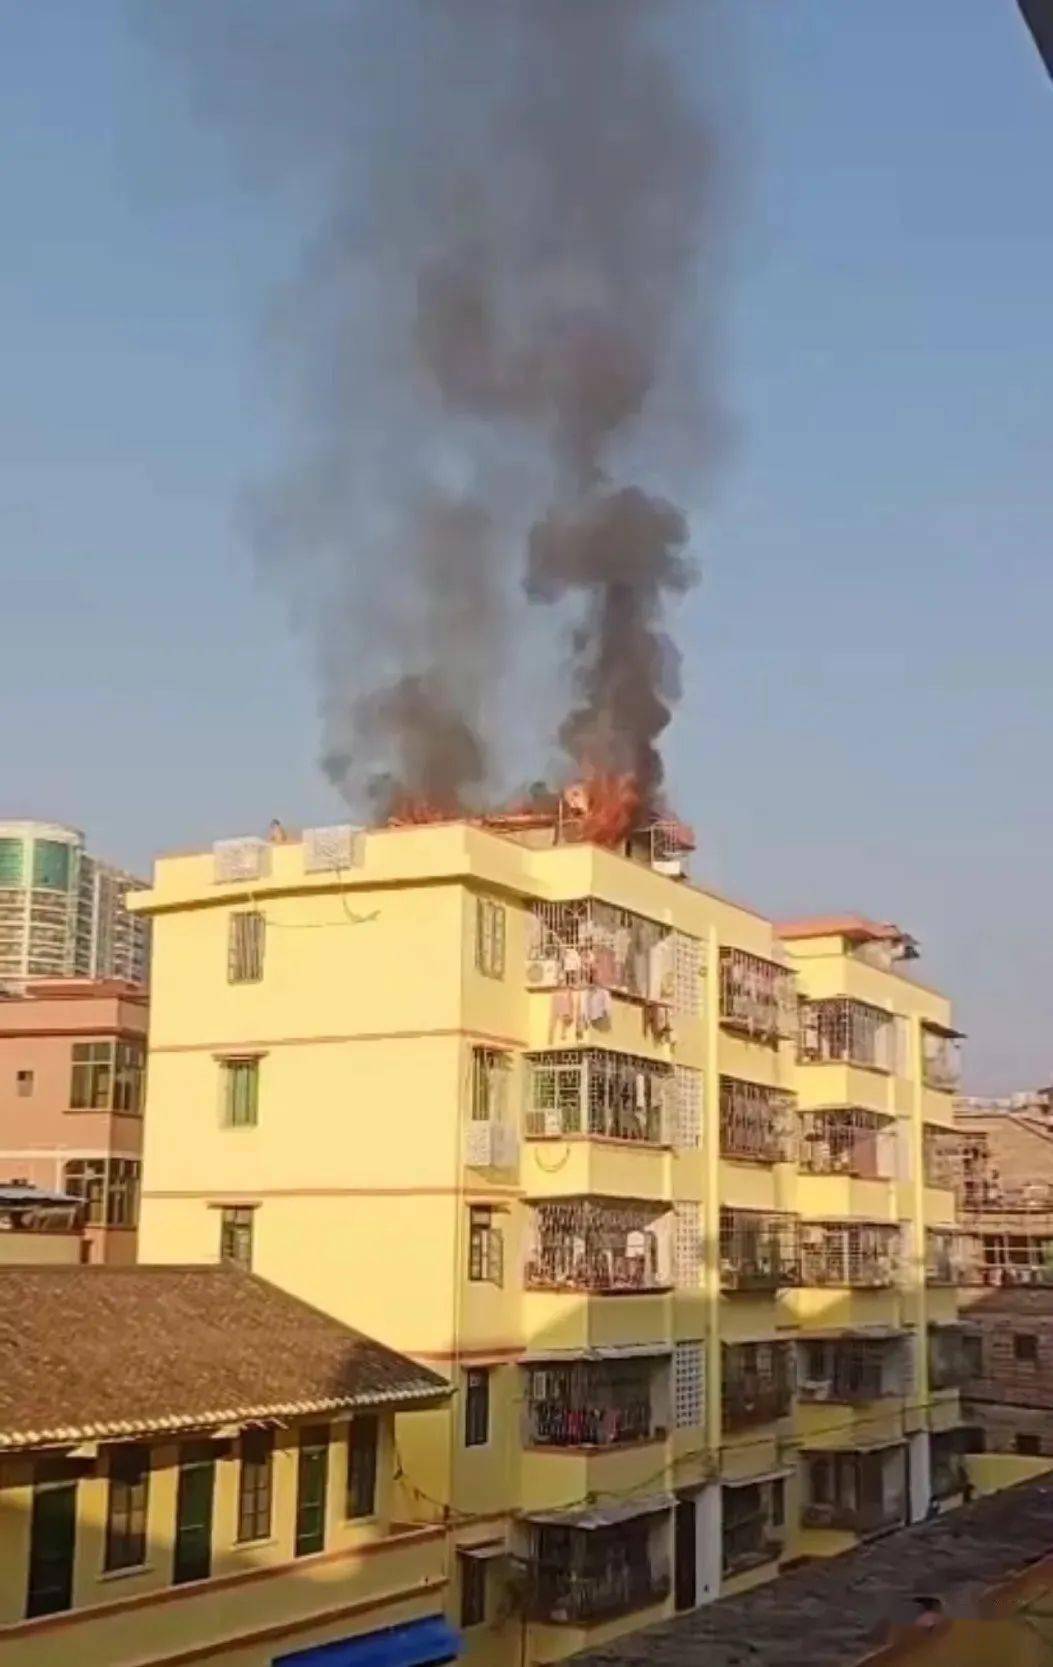 昨天下午,广宁县城一宿舍楼顶着火,火势凶猛,浓烟滚滚